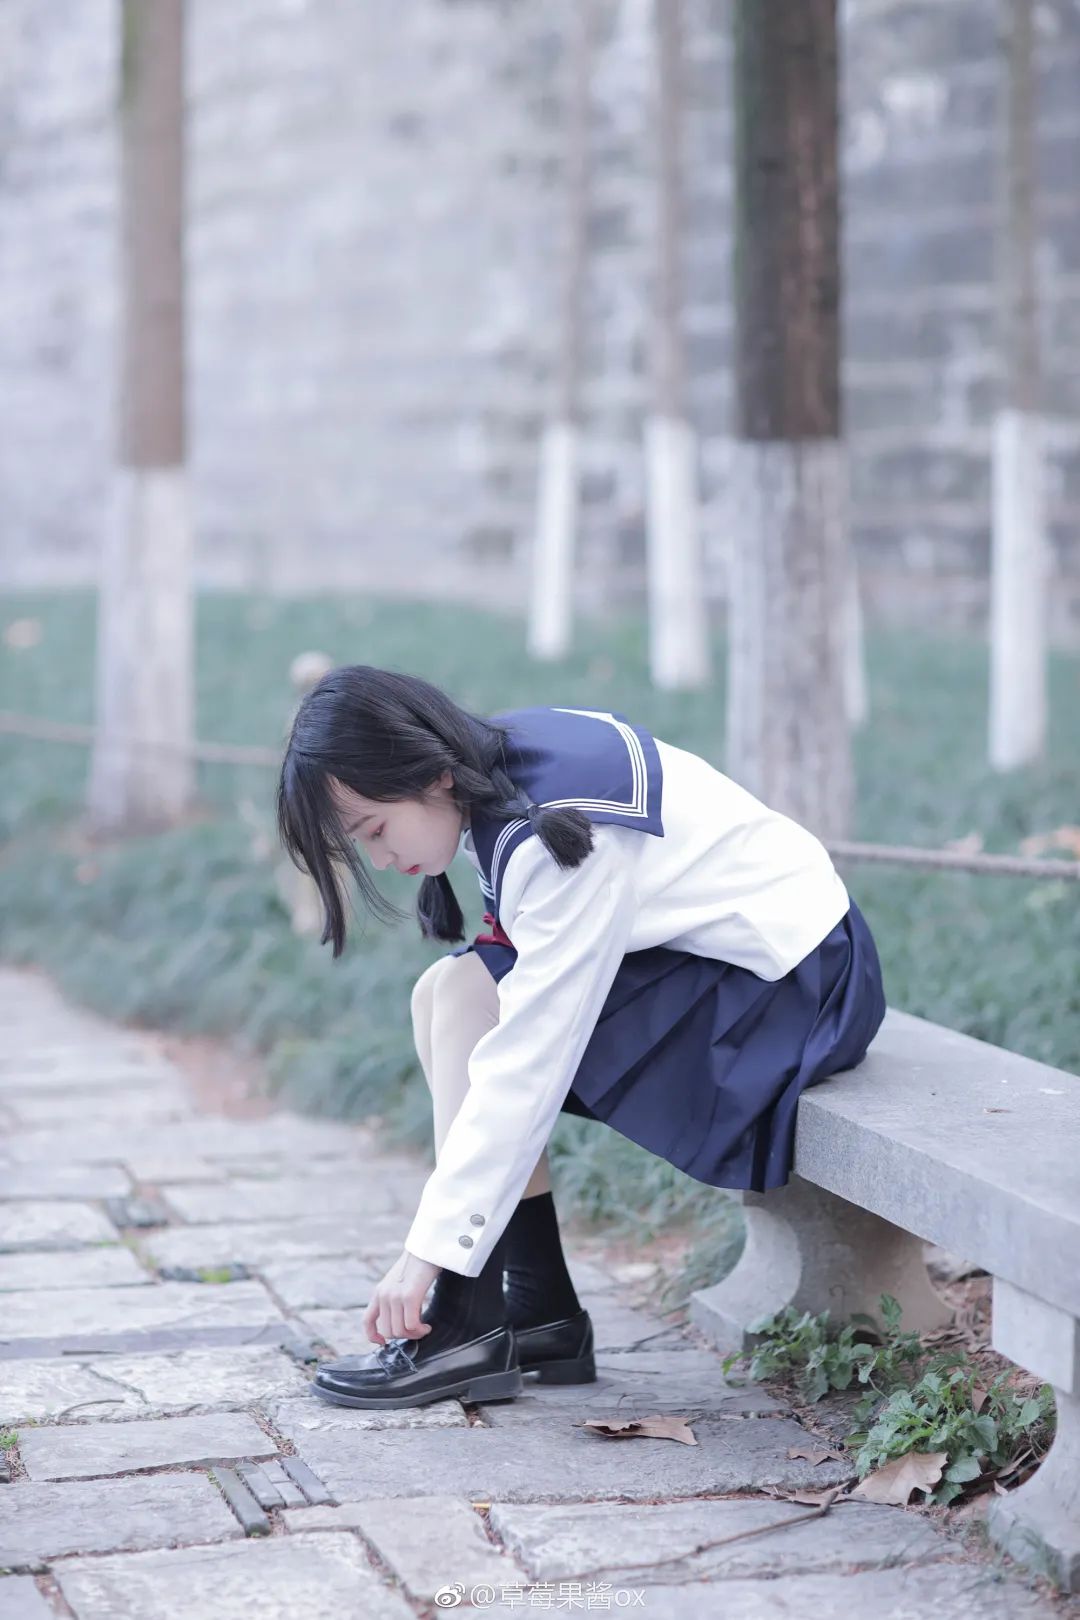 妹子摄影 – JK制服女孩@草莓果酱ox，古墙后躲猫猫可可爱爱_图片 No.1